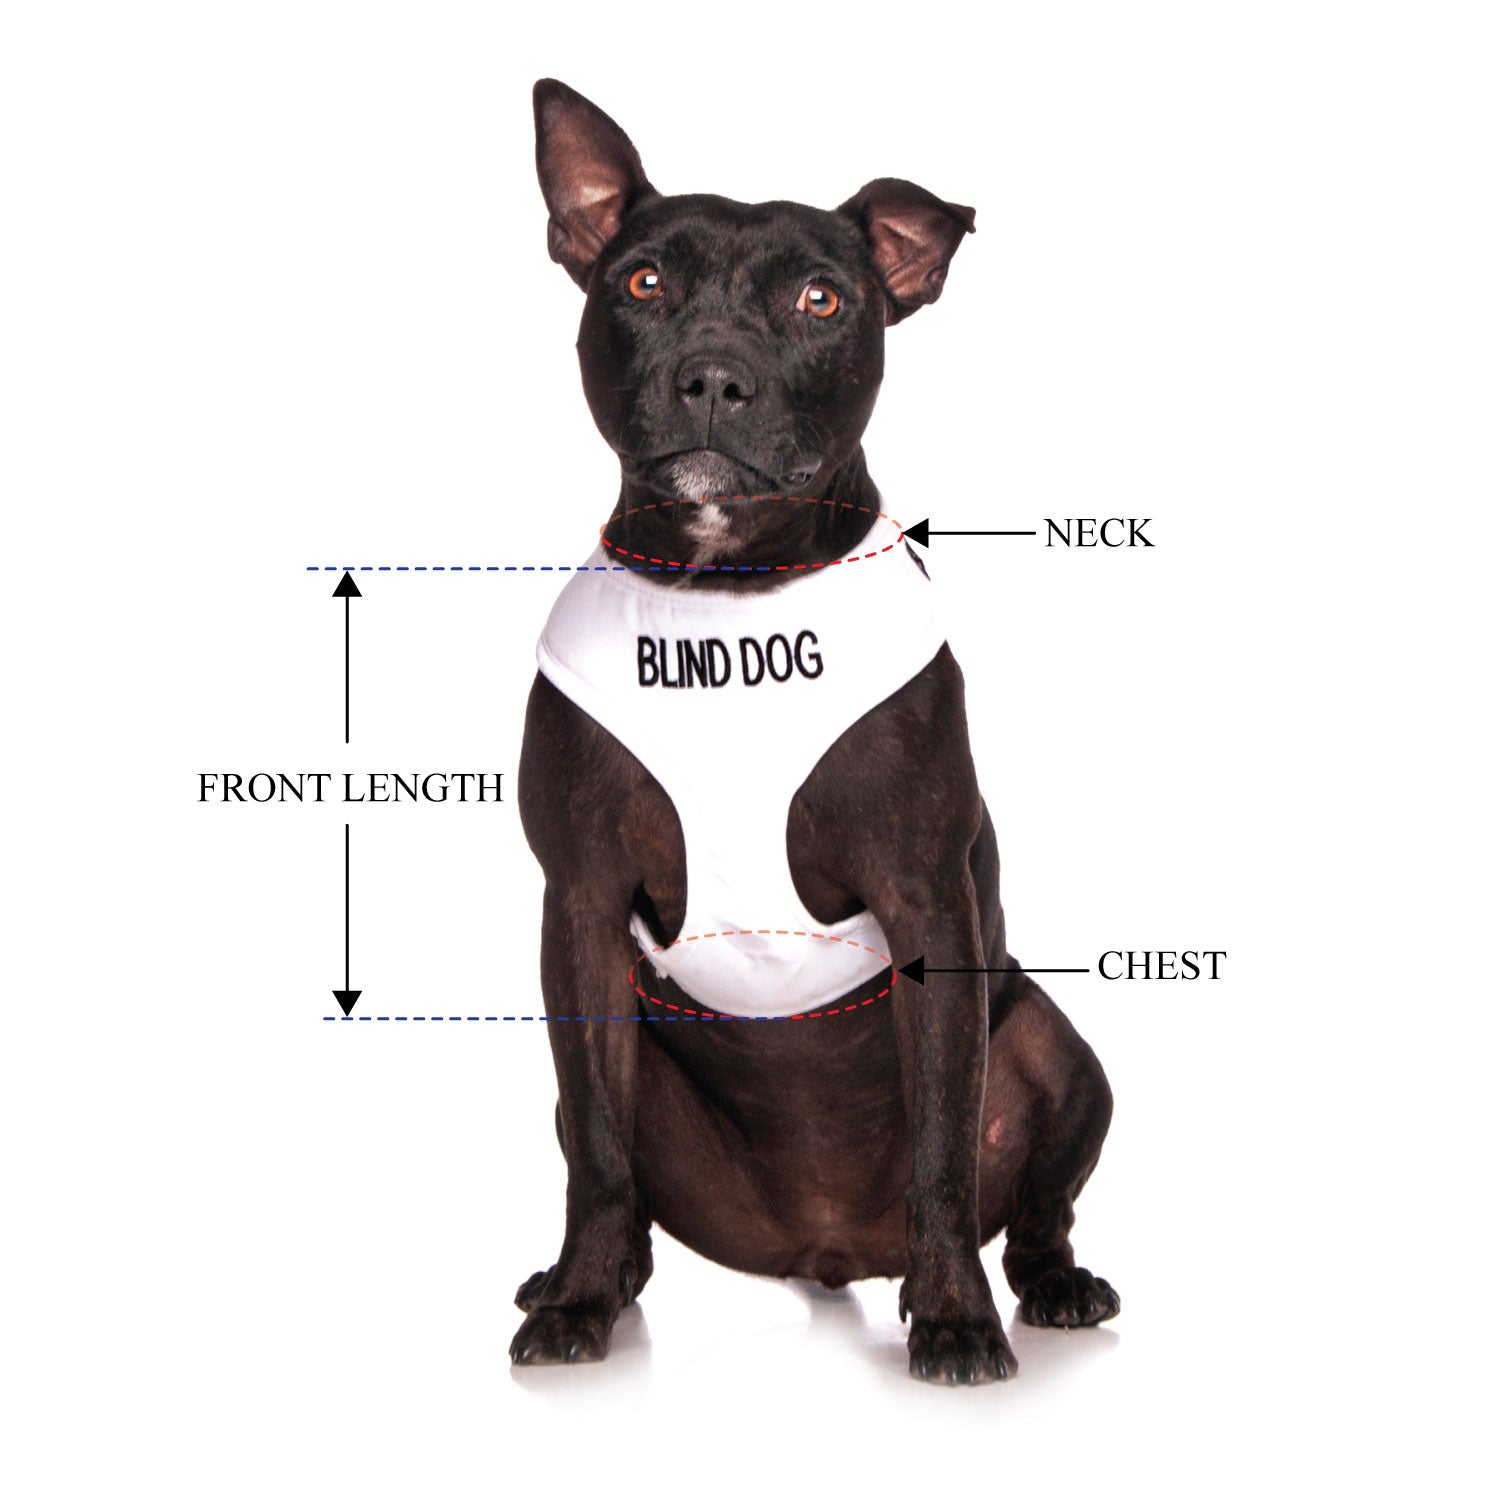 BLIND DOG - Medium adjustable Vest Harness